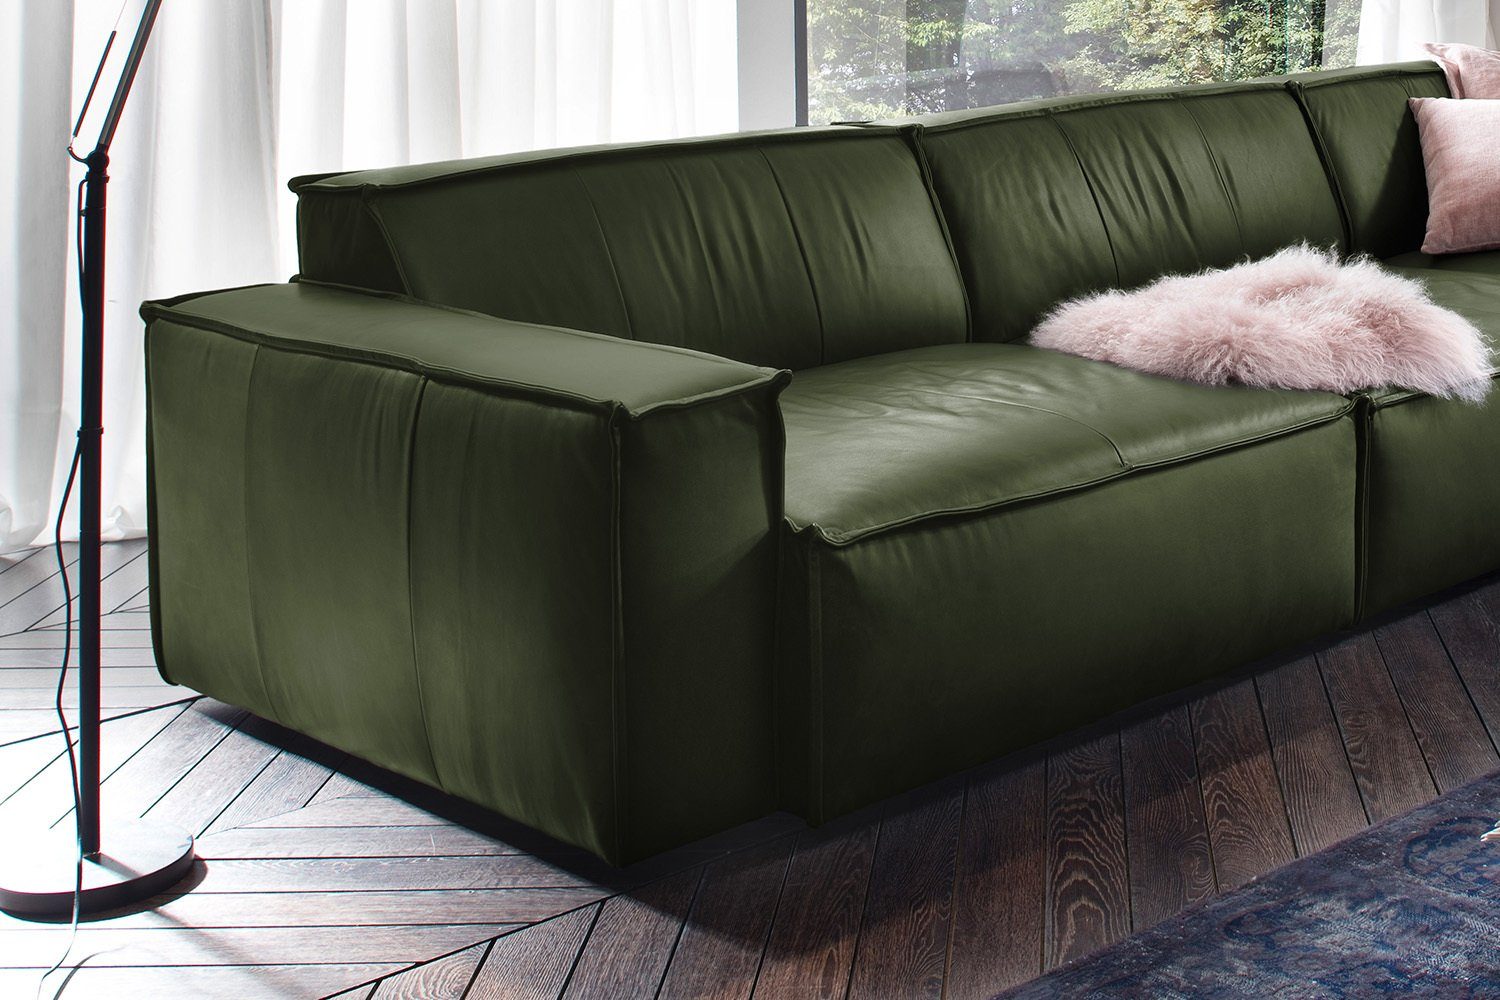 KAWOLA Sofa SAMU, Riesensofa Leder verschiedene Farben grün